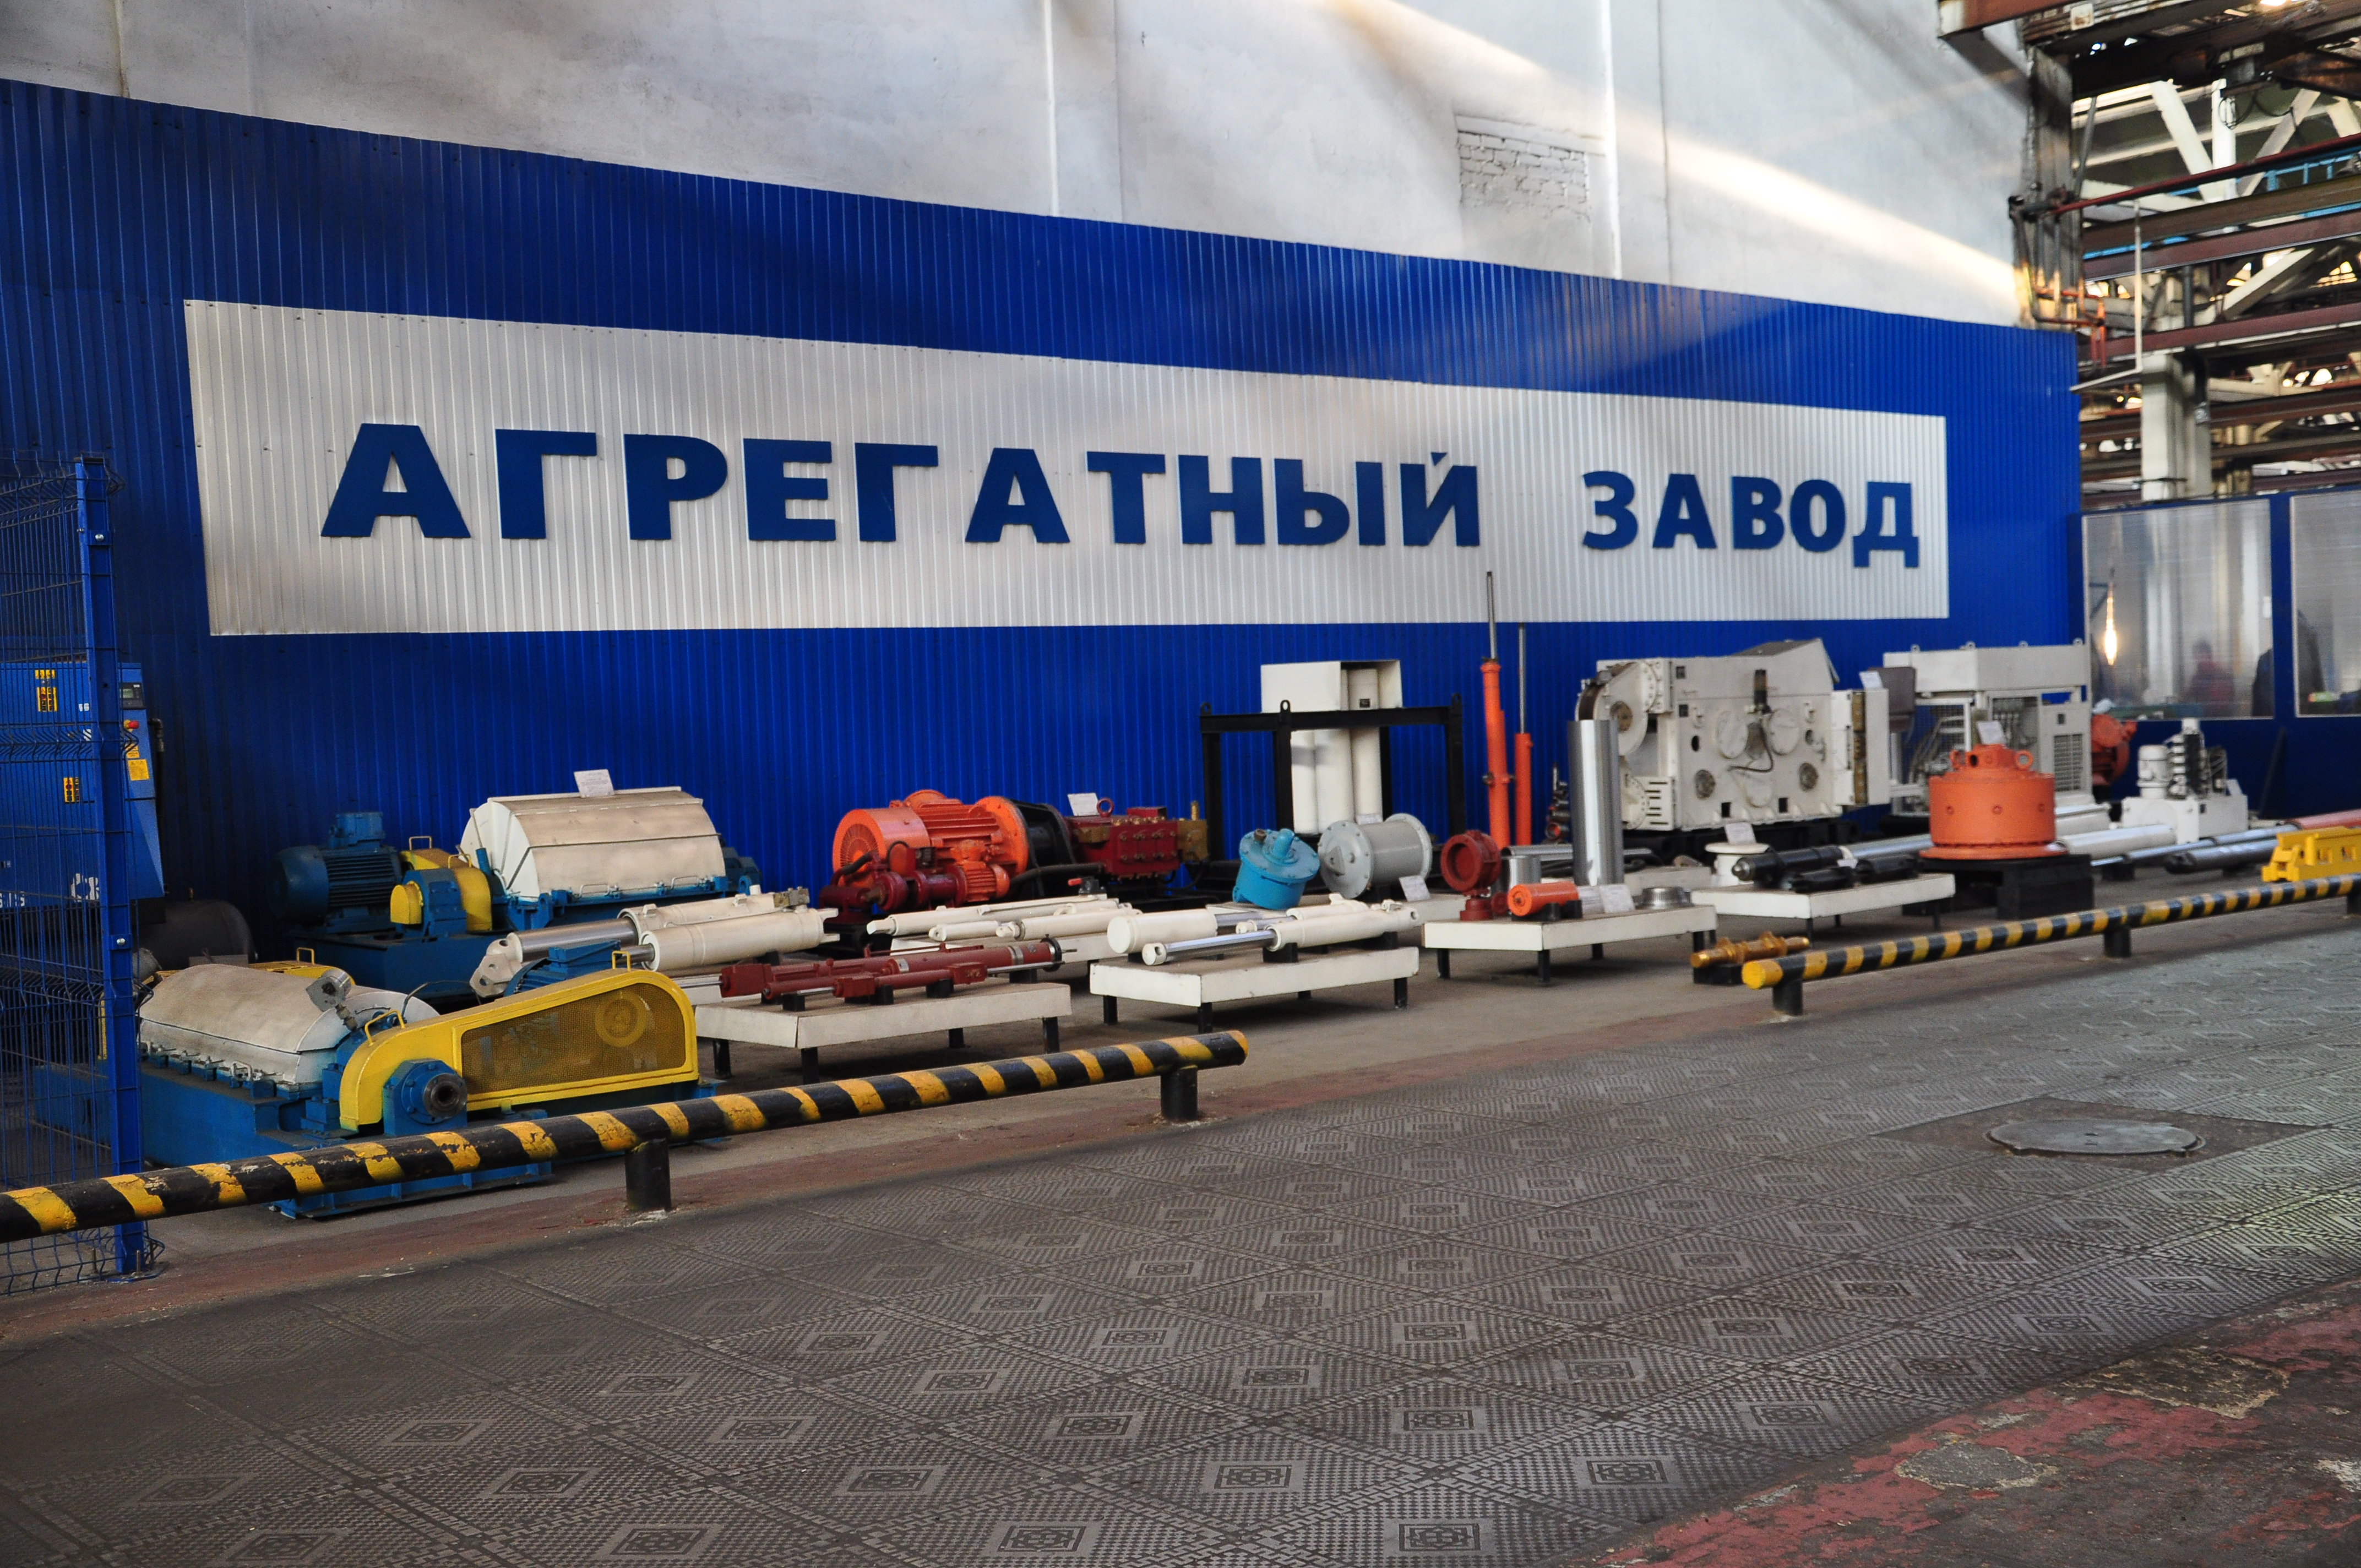 ПАО «Агрегатный завод» — одно из крупнейших машиностроительных предприятий России, традиционно специализирующееся на проектировании и изготовлении сложной силовой гидравлики 